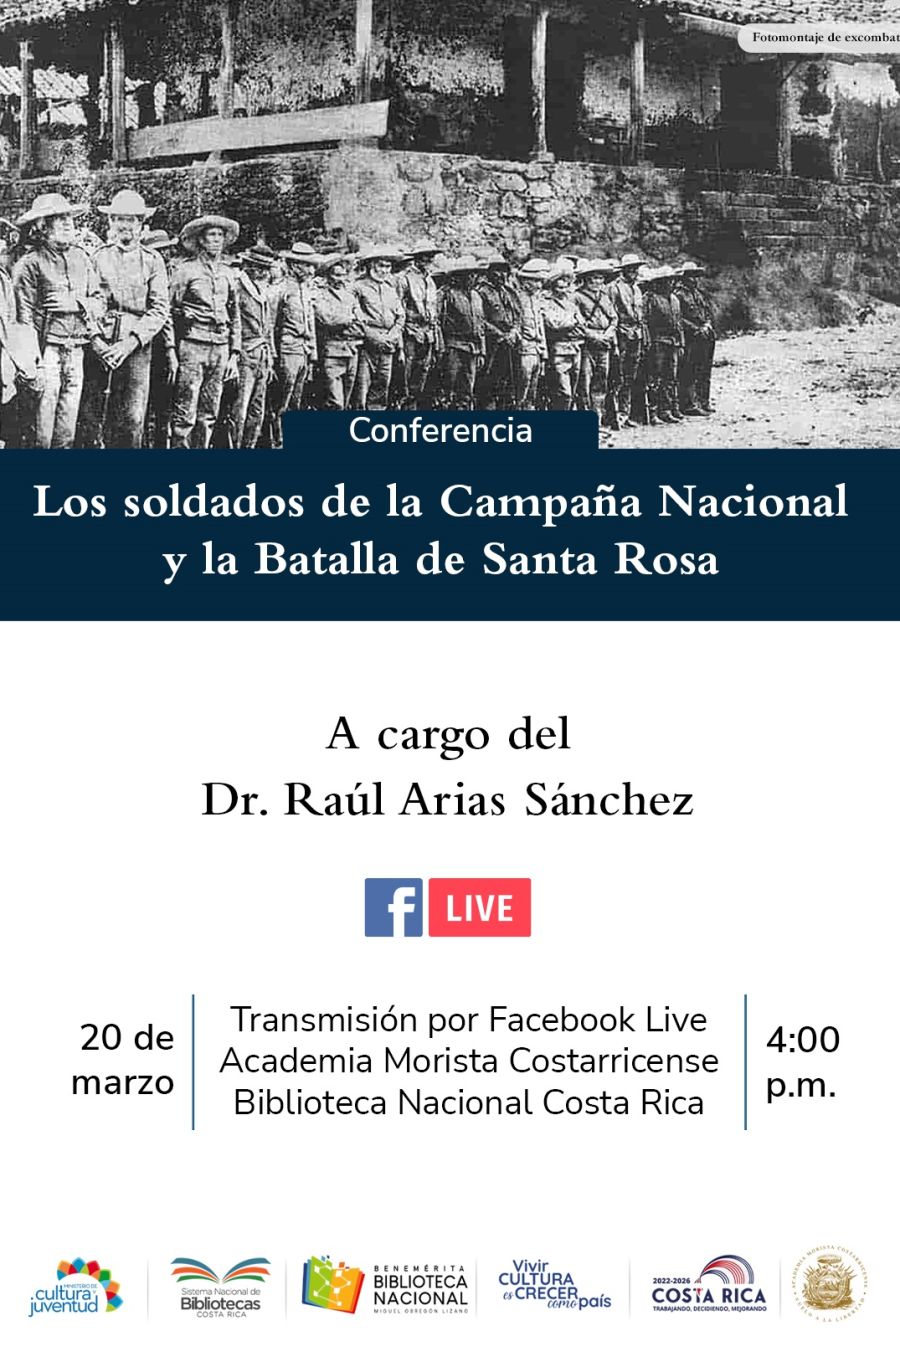 Conferencia. Los soldados de la Campaña Nacional y la Batalla de Santa Rosa